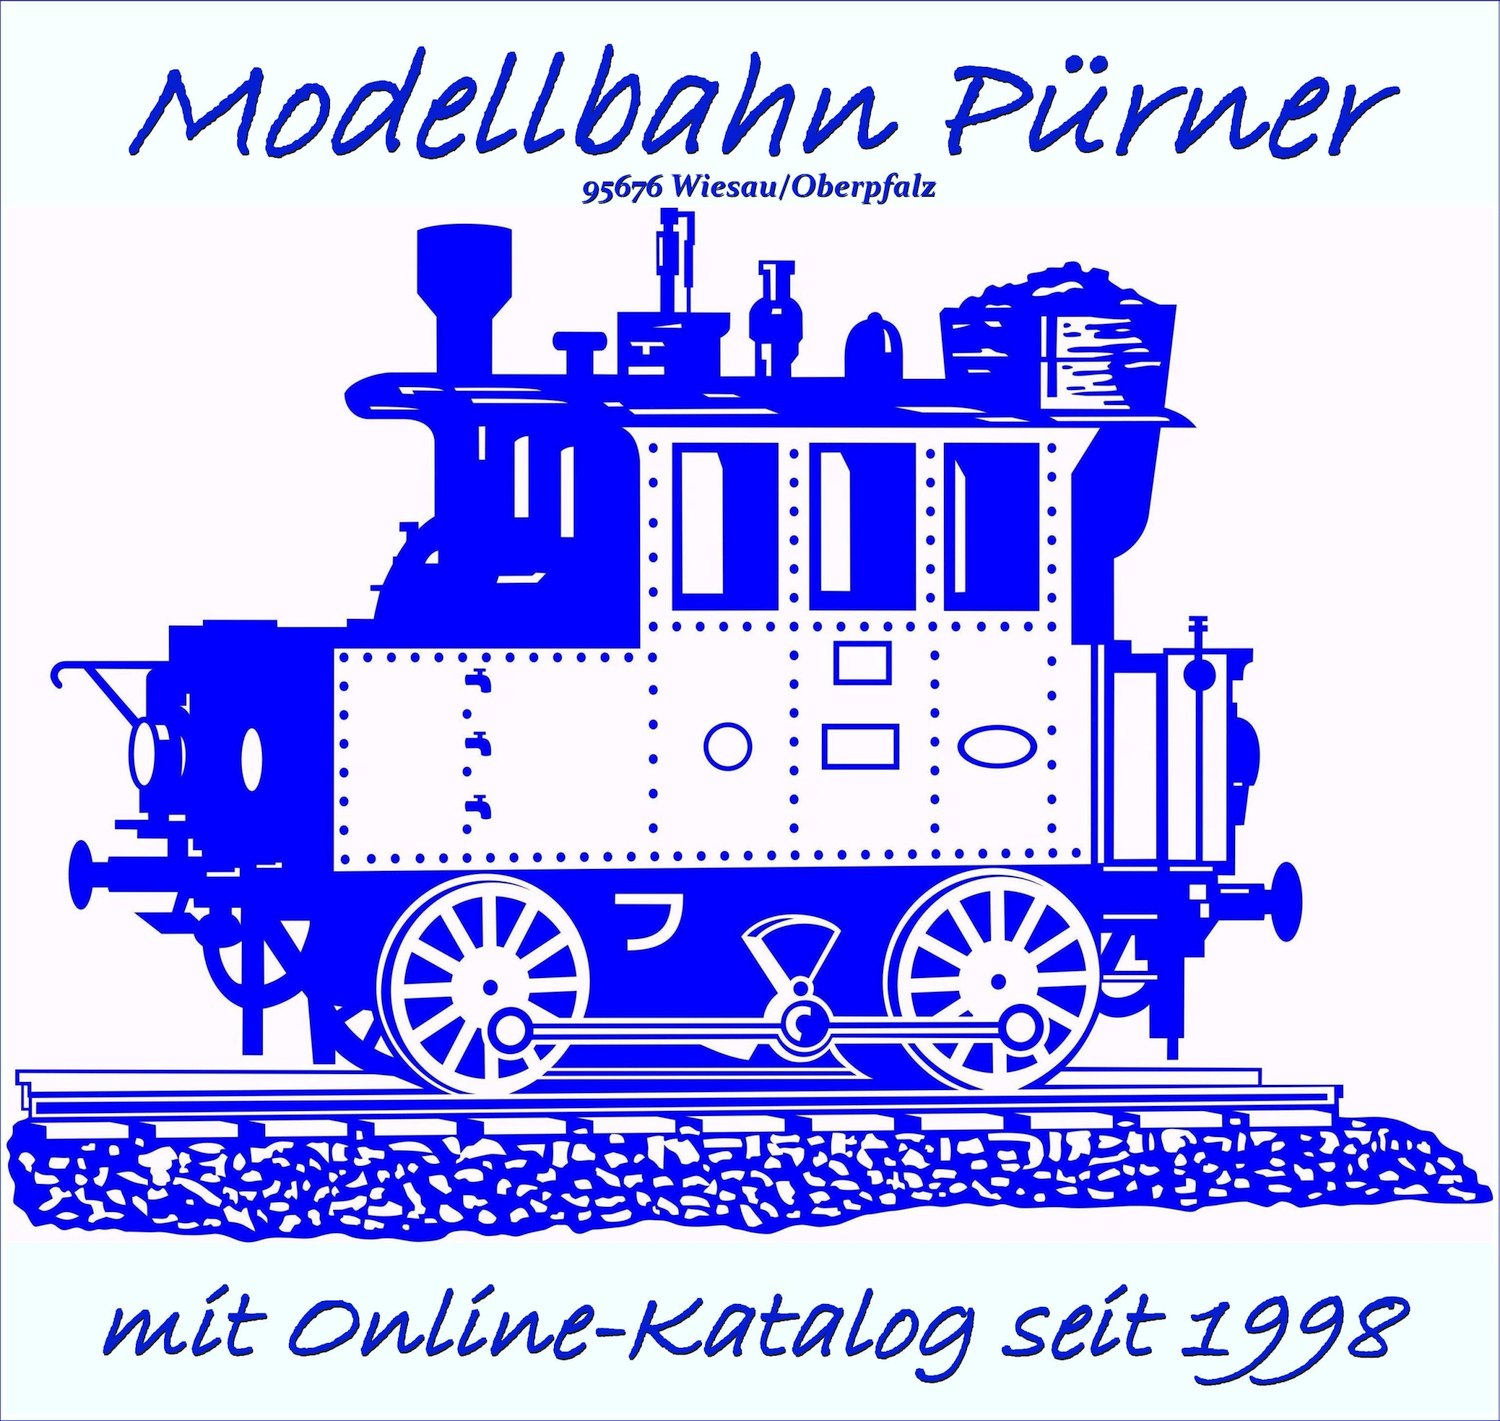 Modellbahn Pürner, Wiesau